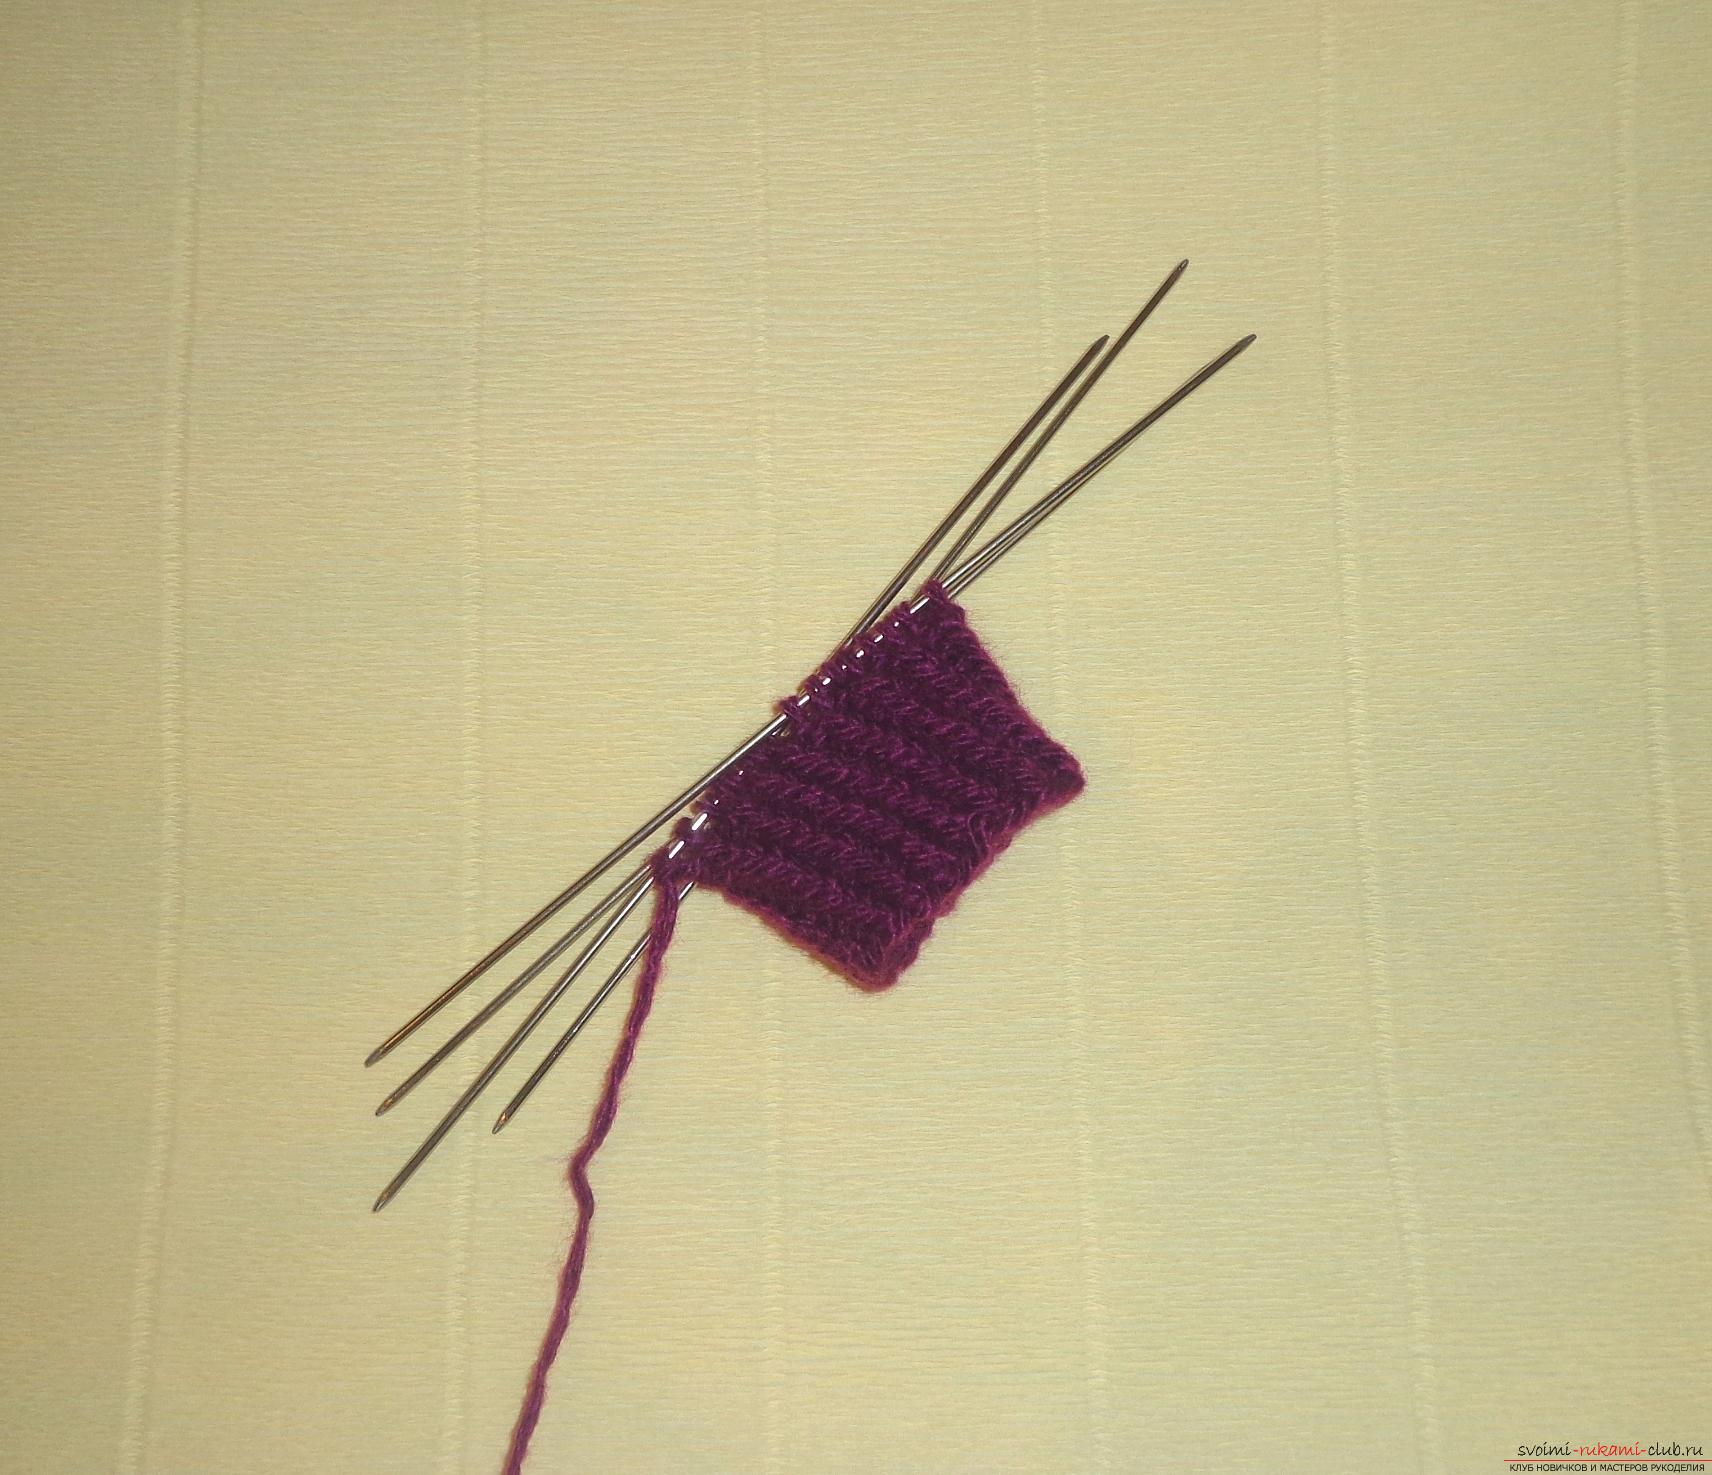 Фото к уроку по вязанию спицами детских носочков «Зимние». Фото №2